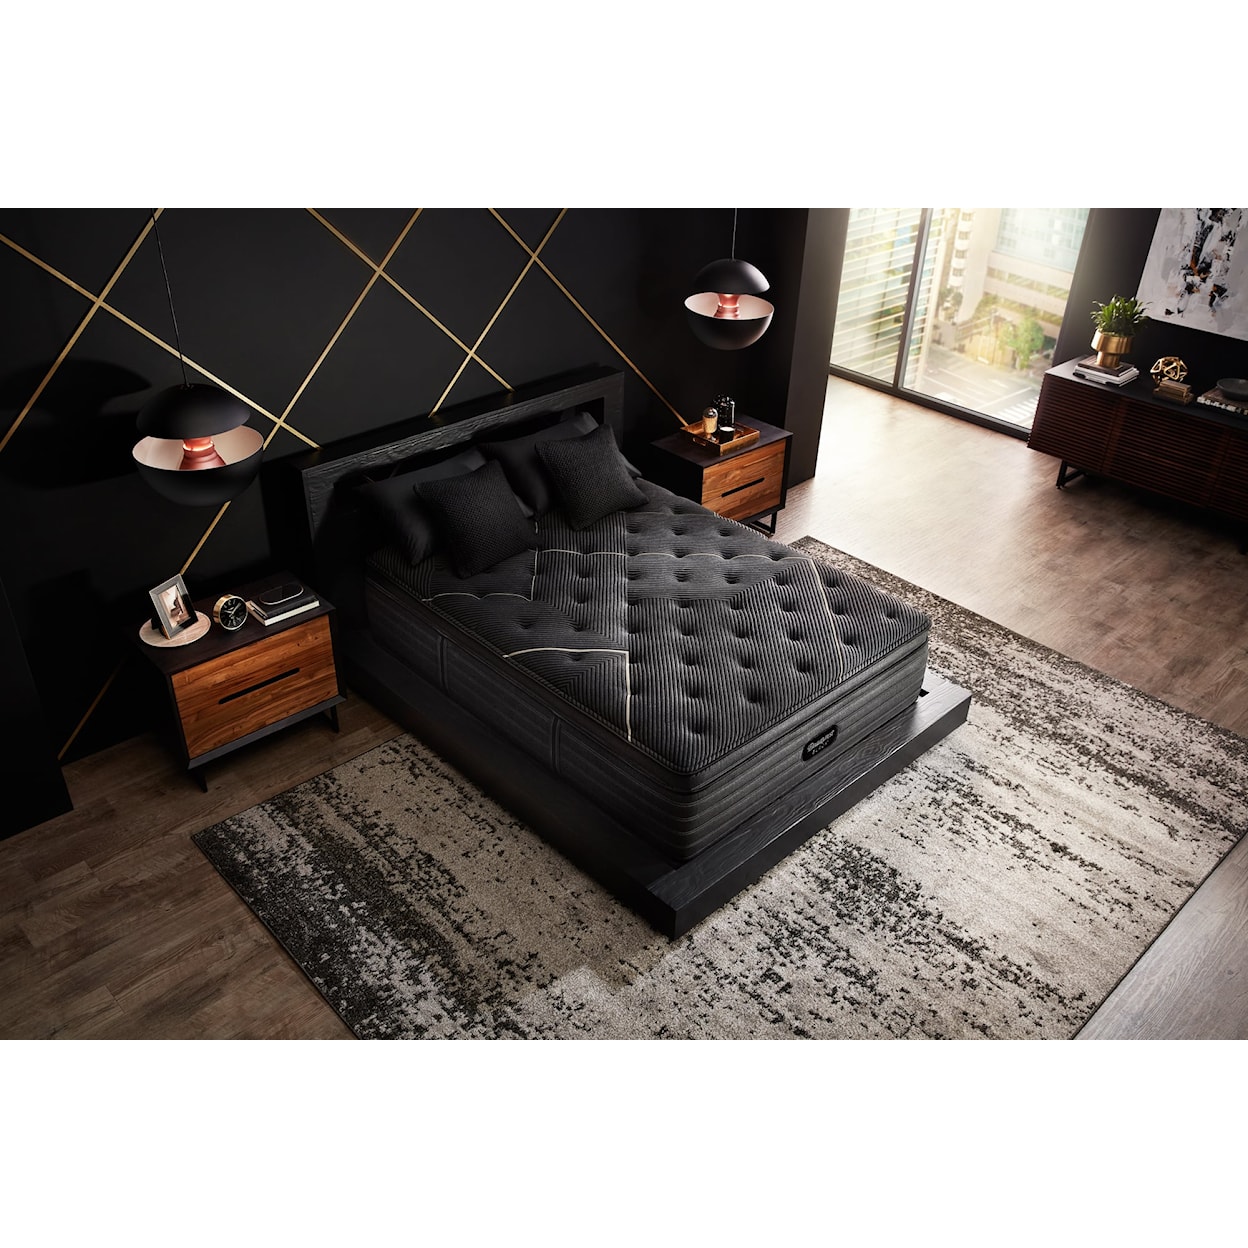 Beautyrest Beautyrest® Black K-Class 16.5" Plush Pillow Top Mattress - King